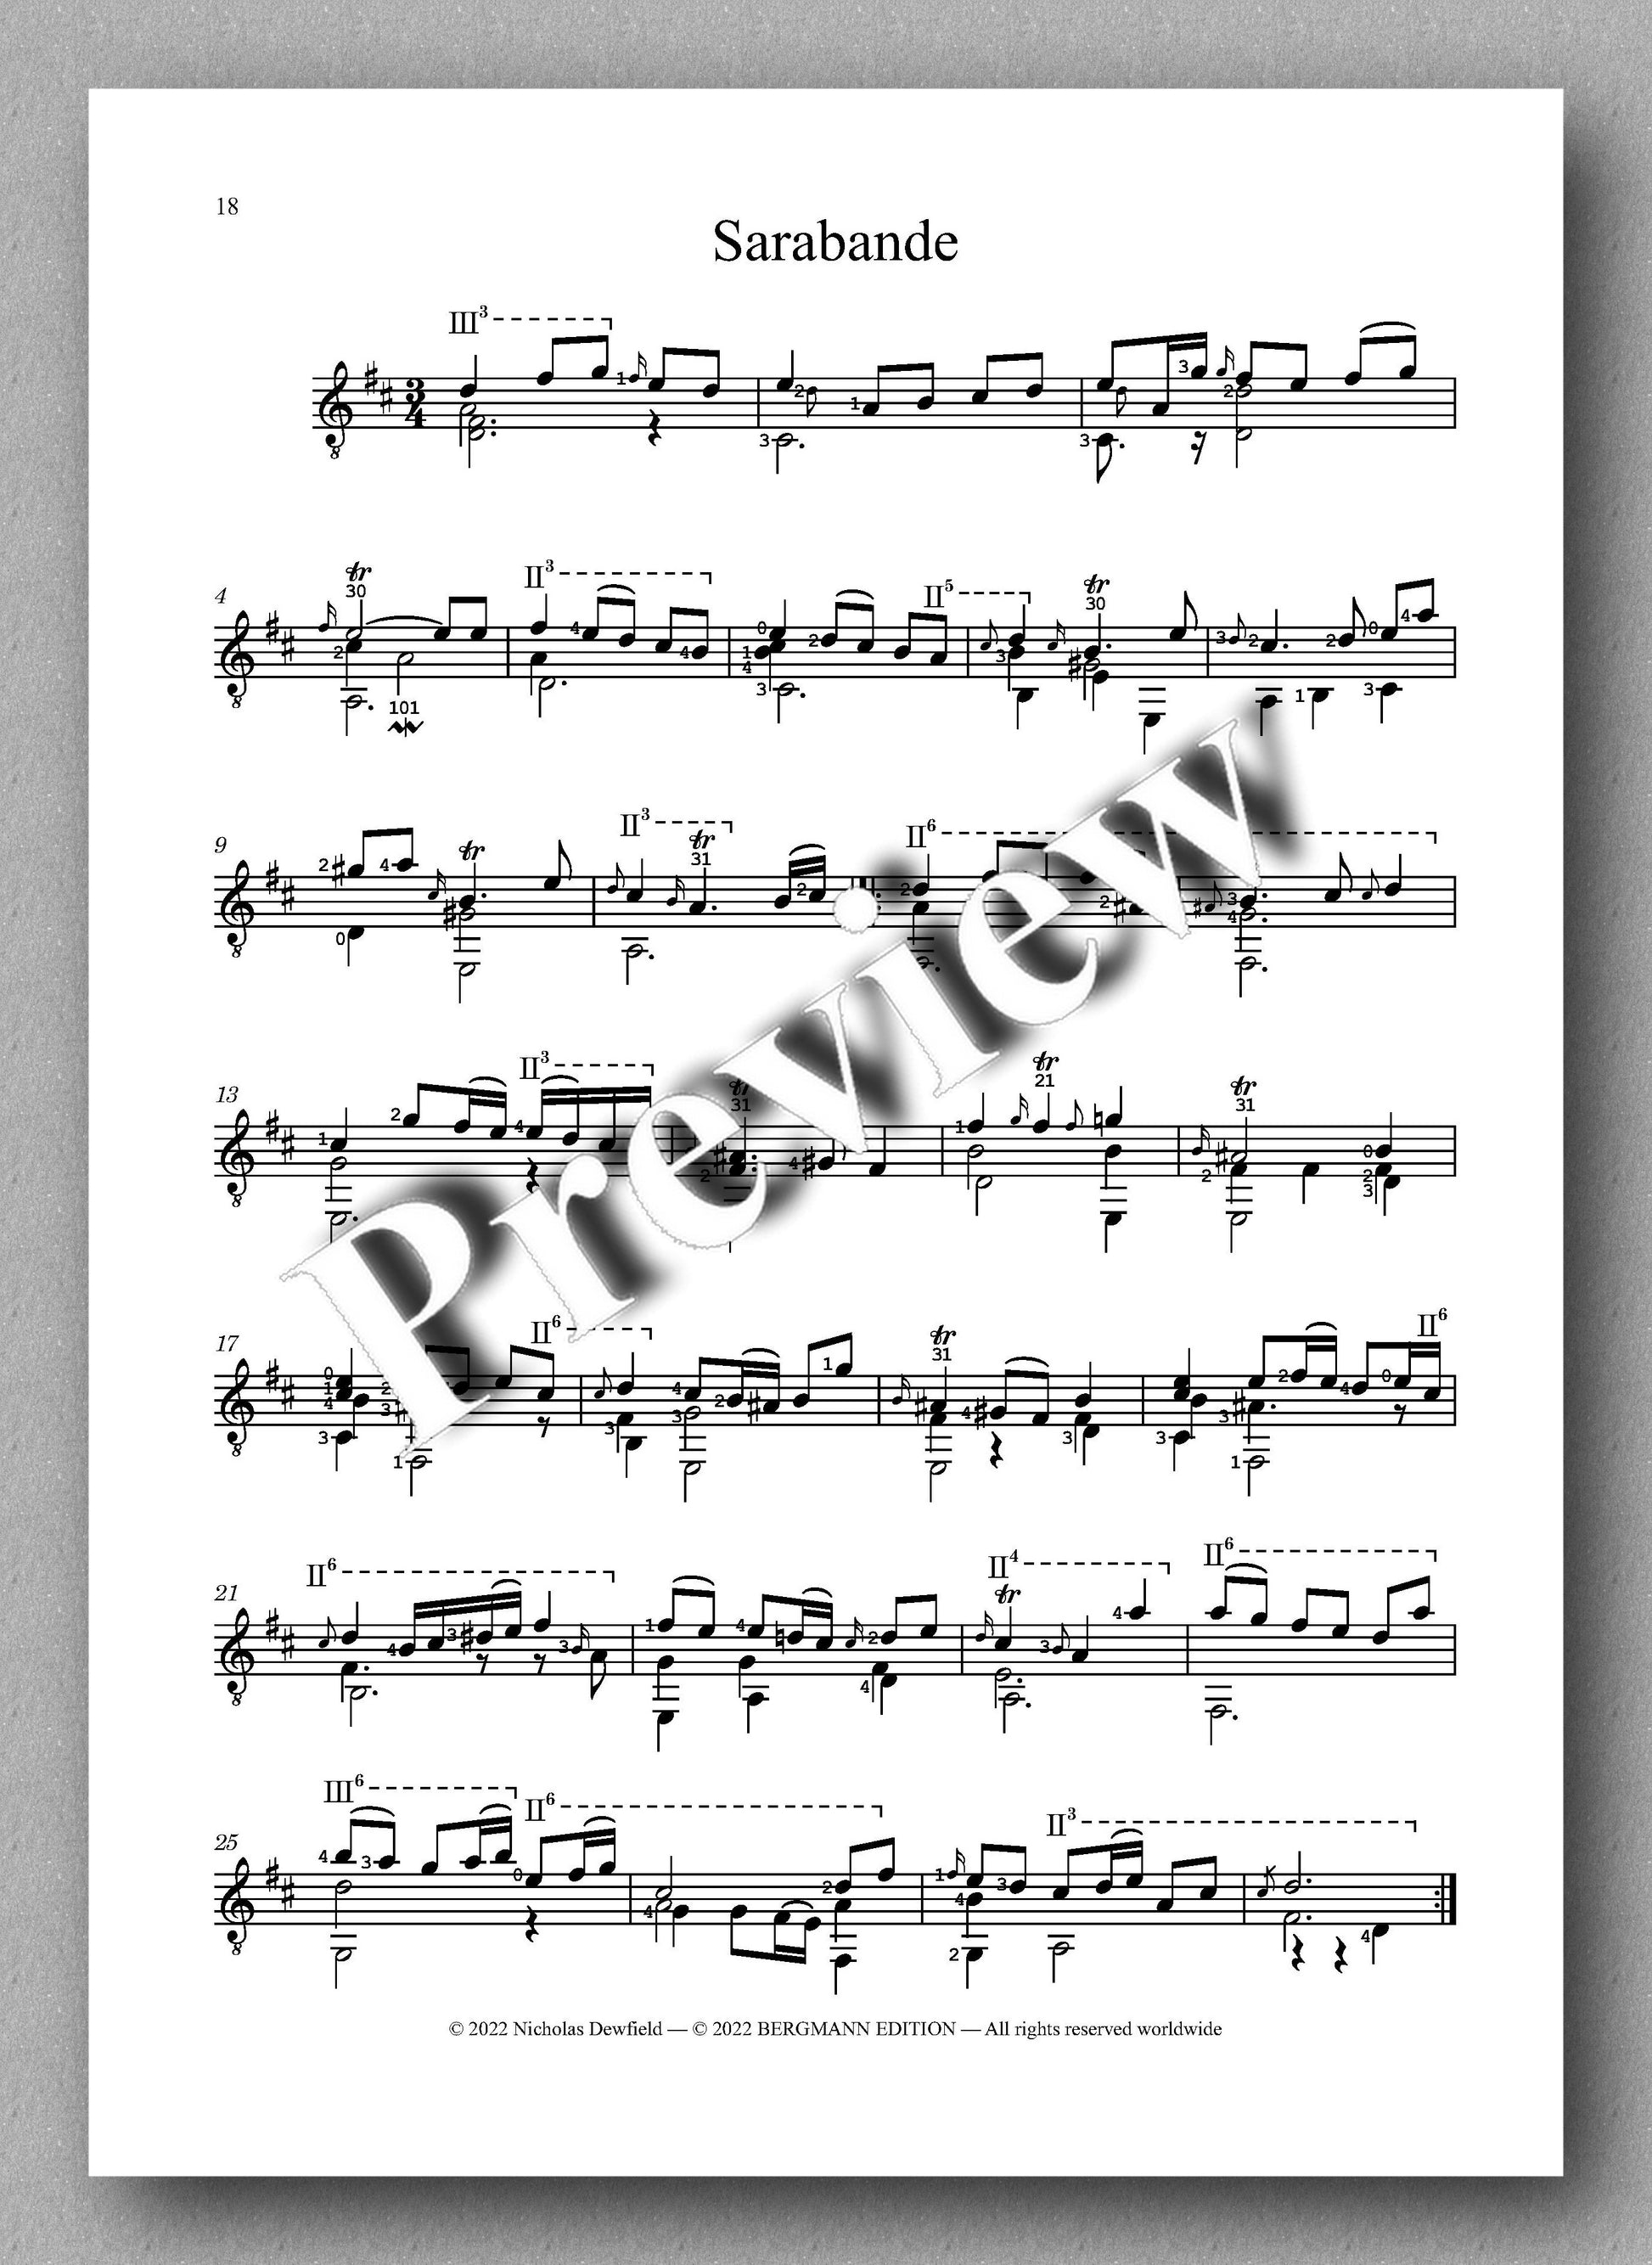 Weiss-Dewfield, Sonata No. 10 - Sarabande